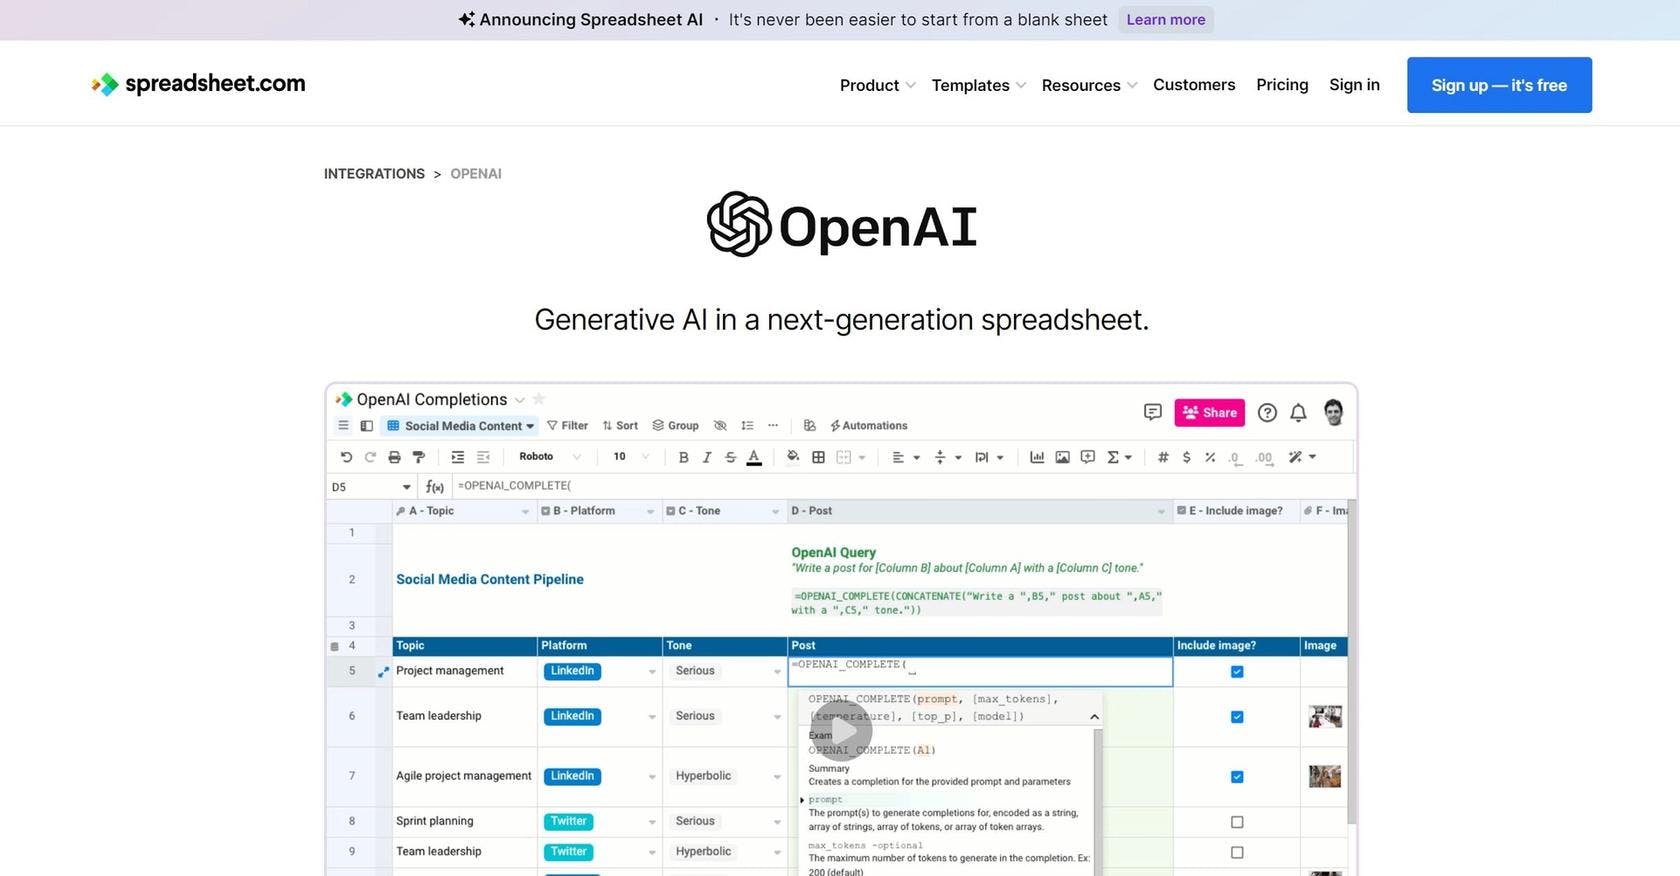 ThemotherAI - OpenAI in Spreadsheet